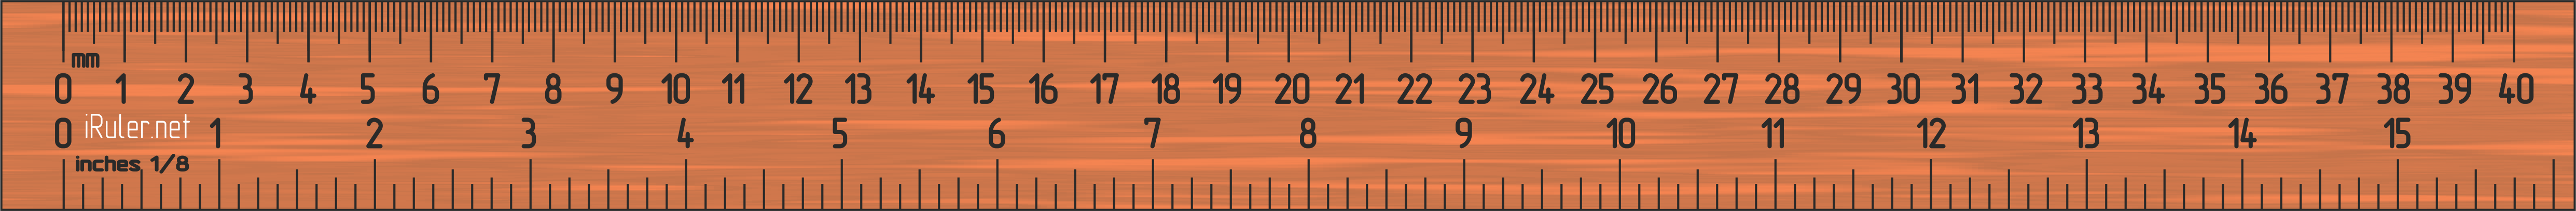 ruler_40cm